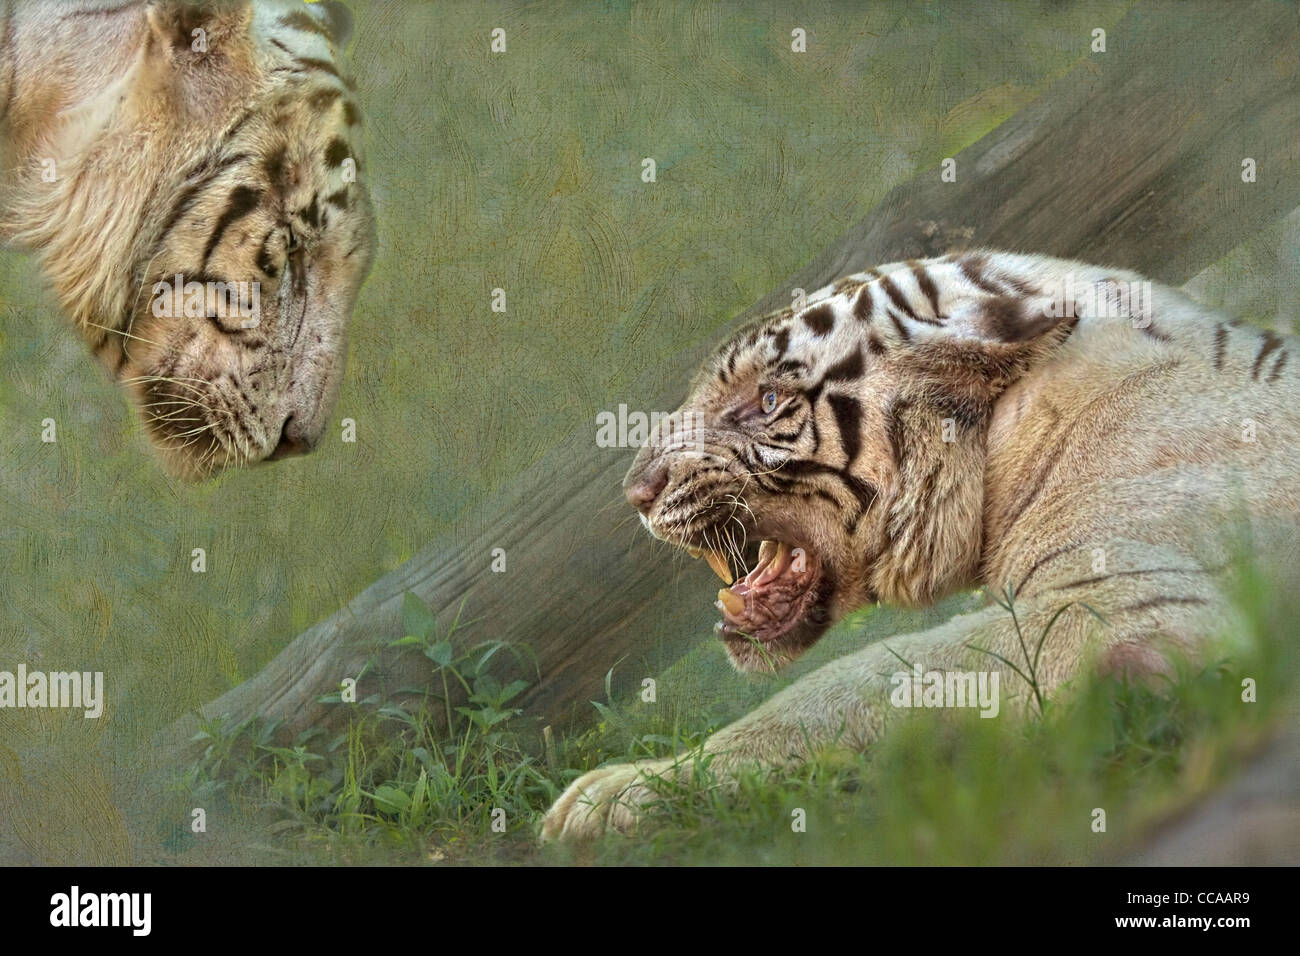 White Tiger, Panthera tigris, défier son compagnon. Banque D'Images